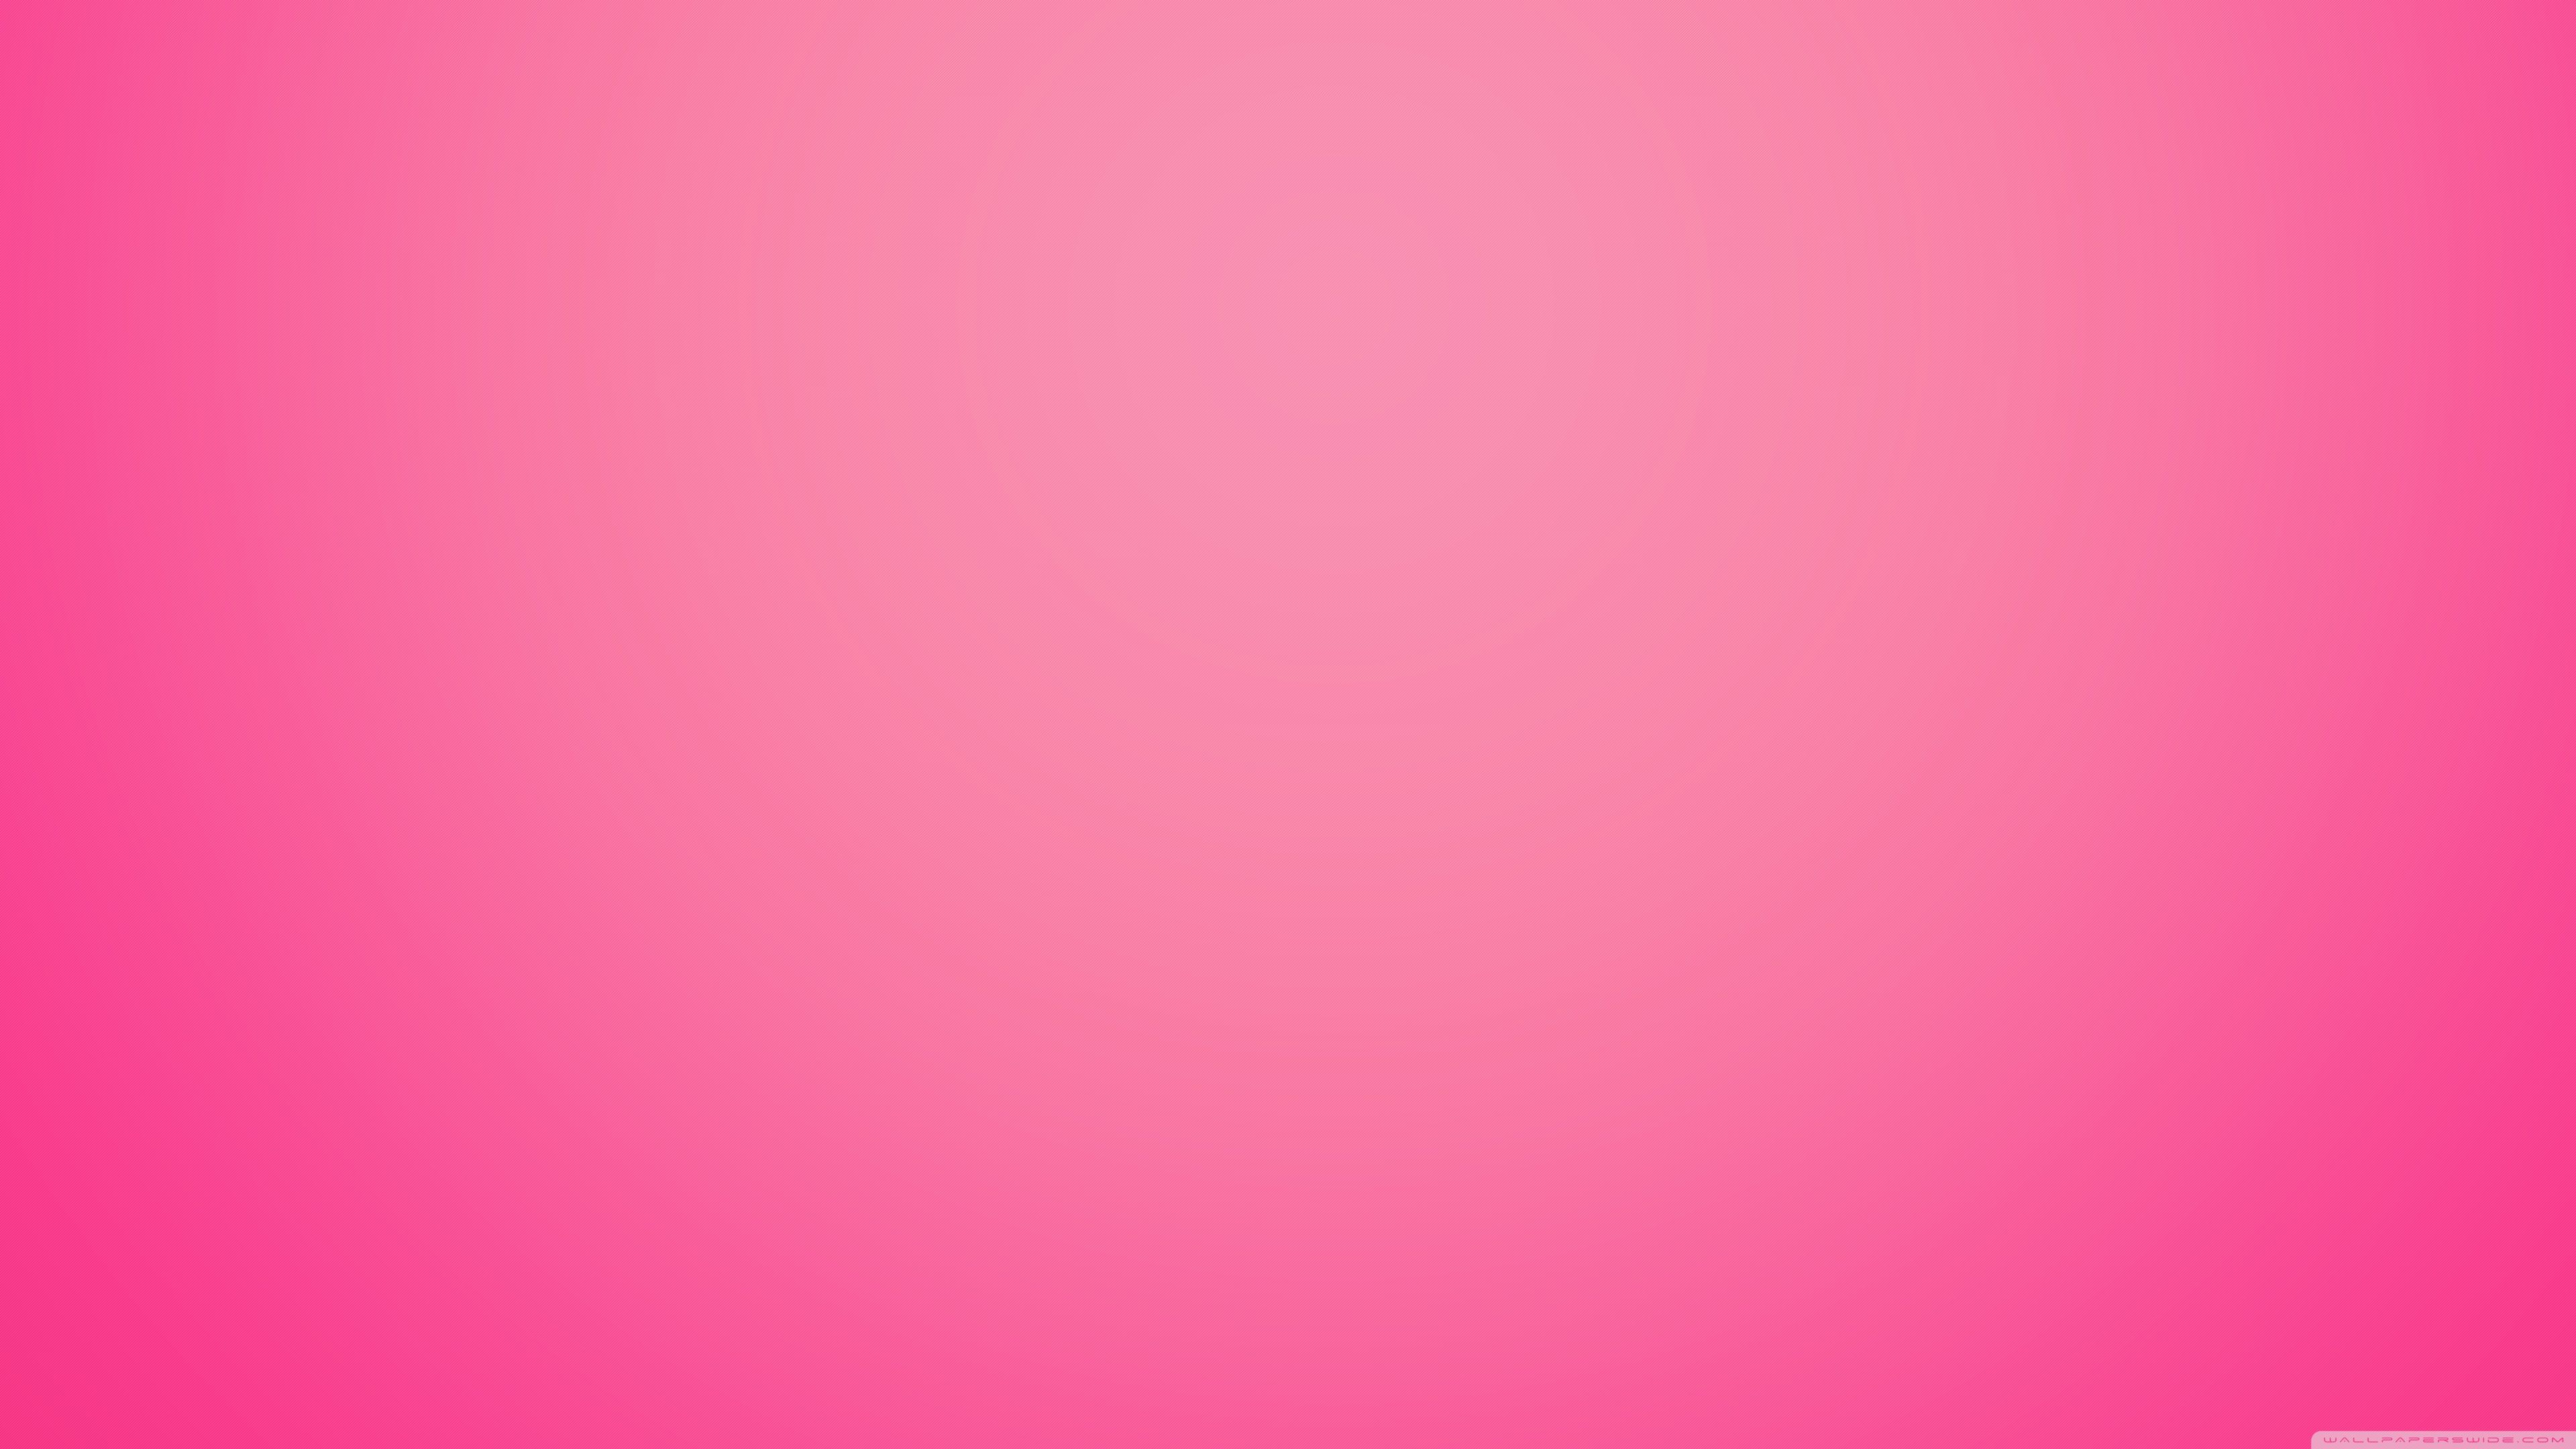 4K Pink Wallpaper Free 4K Pink Background